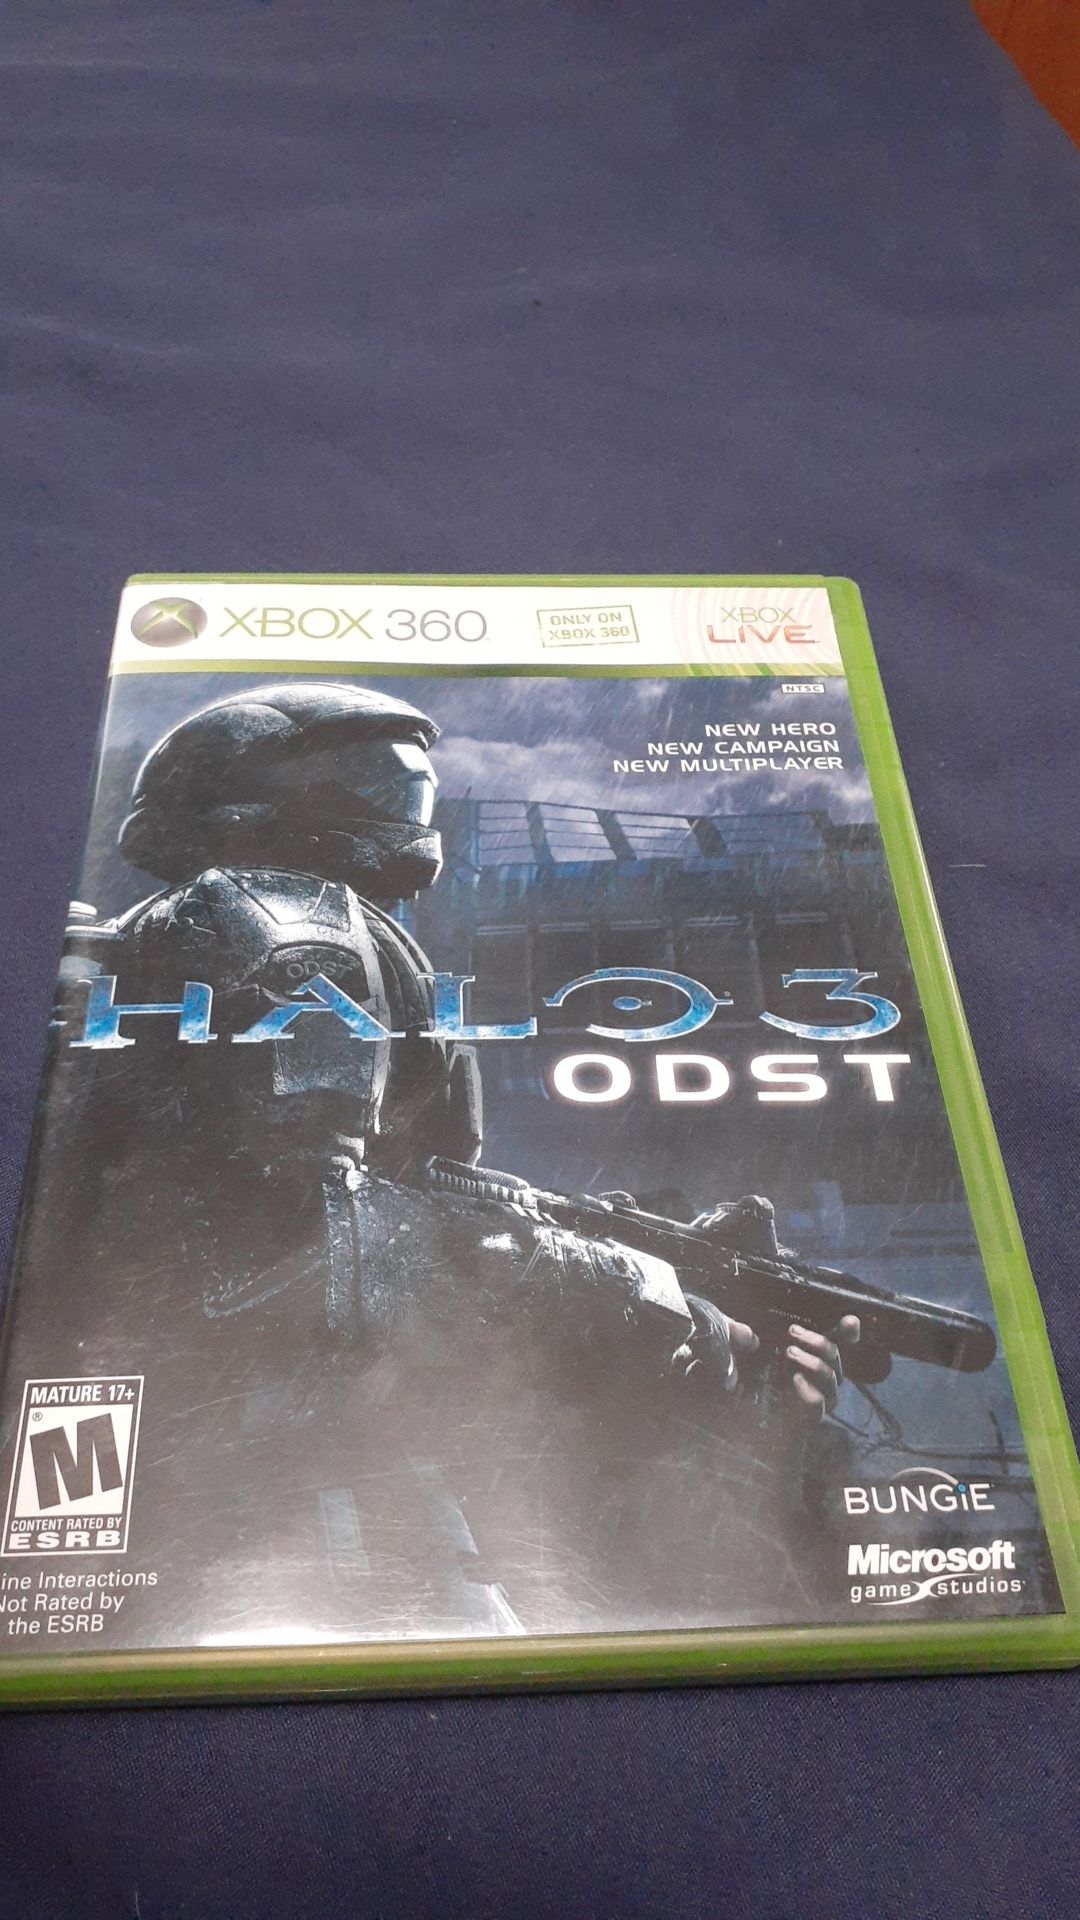 Xbox360 HALO 3 ODST